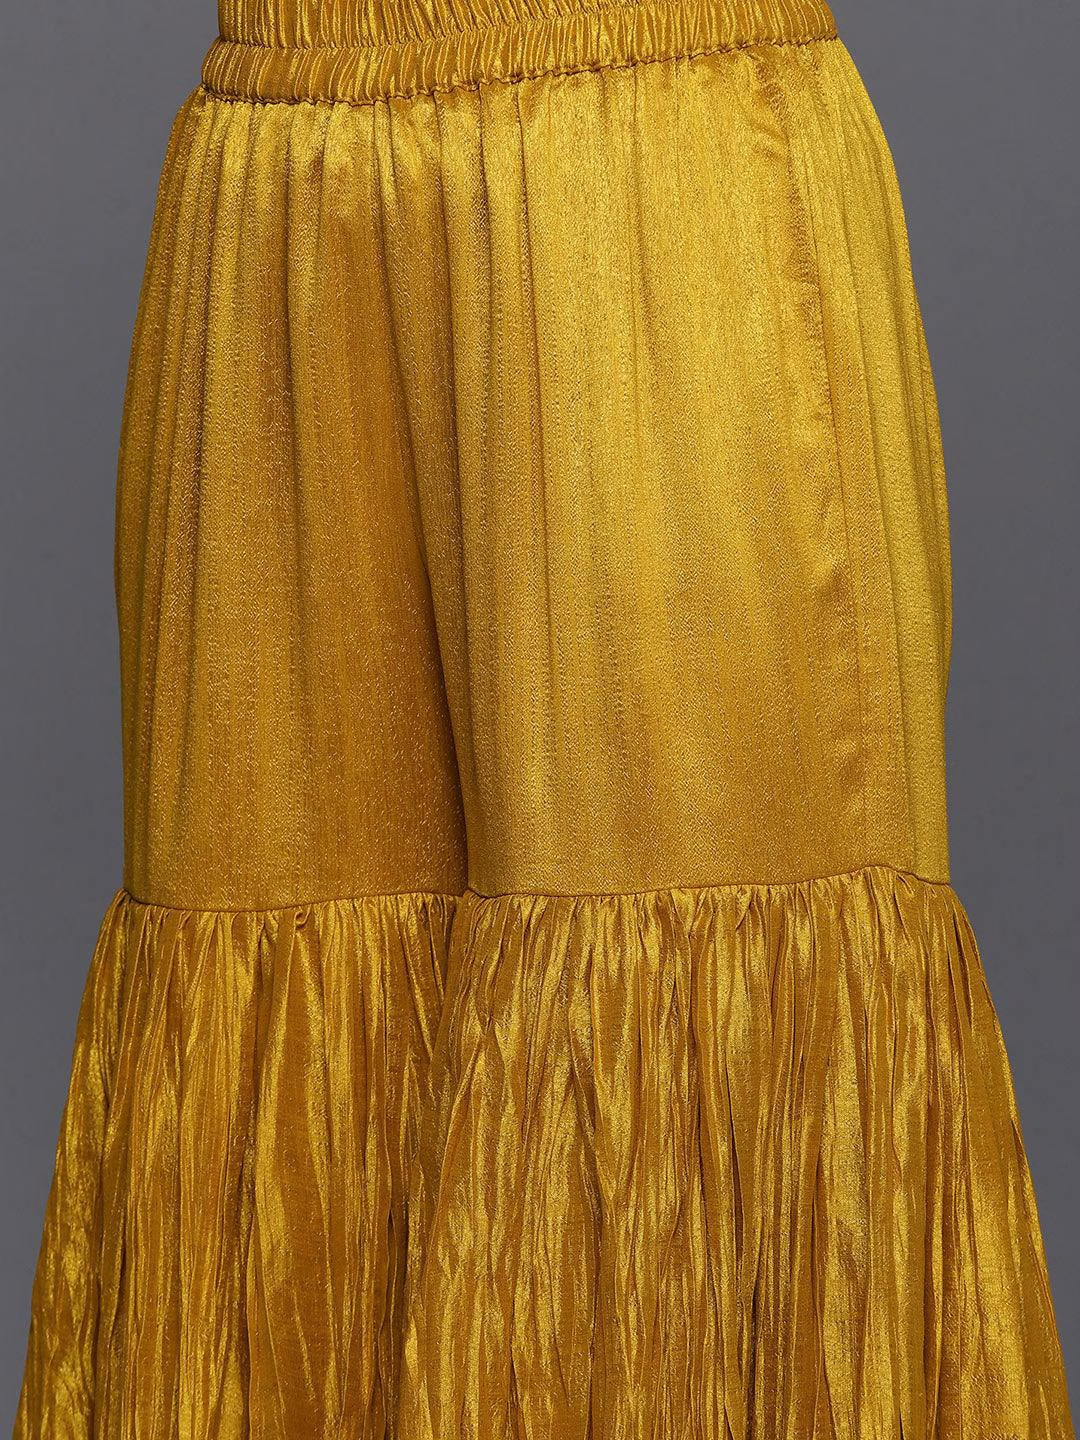 Women Mustard Yellow Floral Motifs Sequinned Salwar Suit